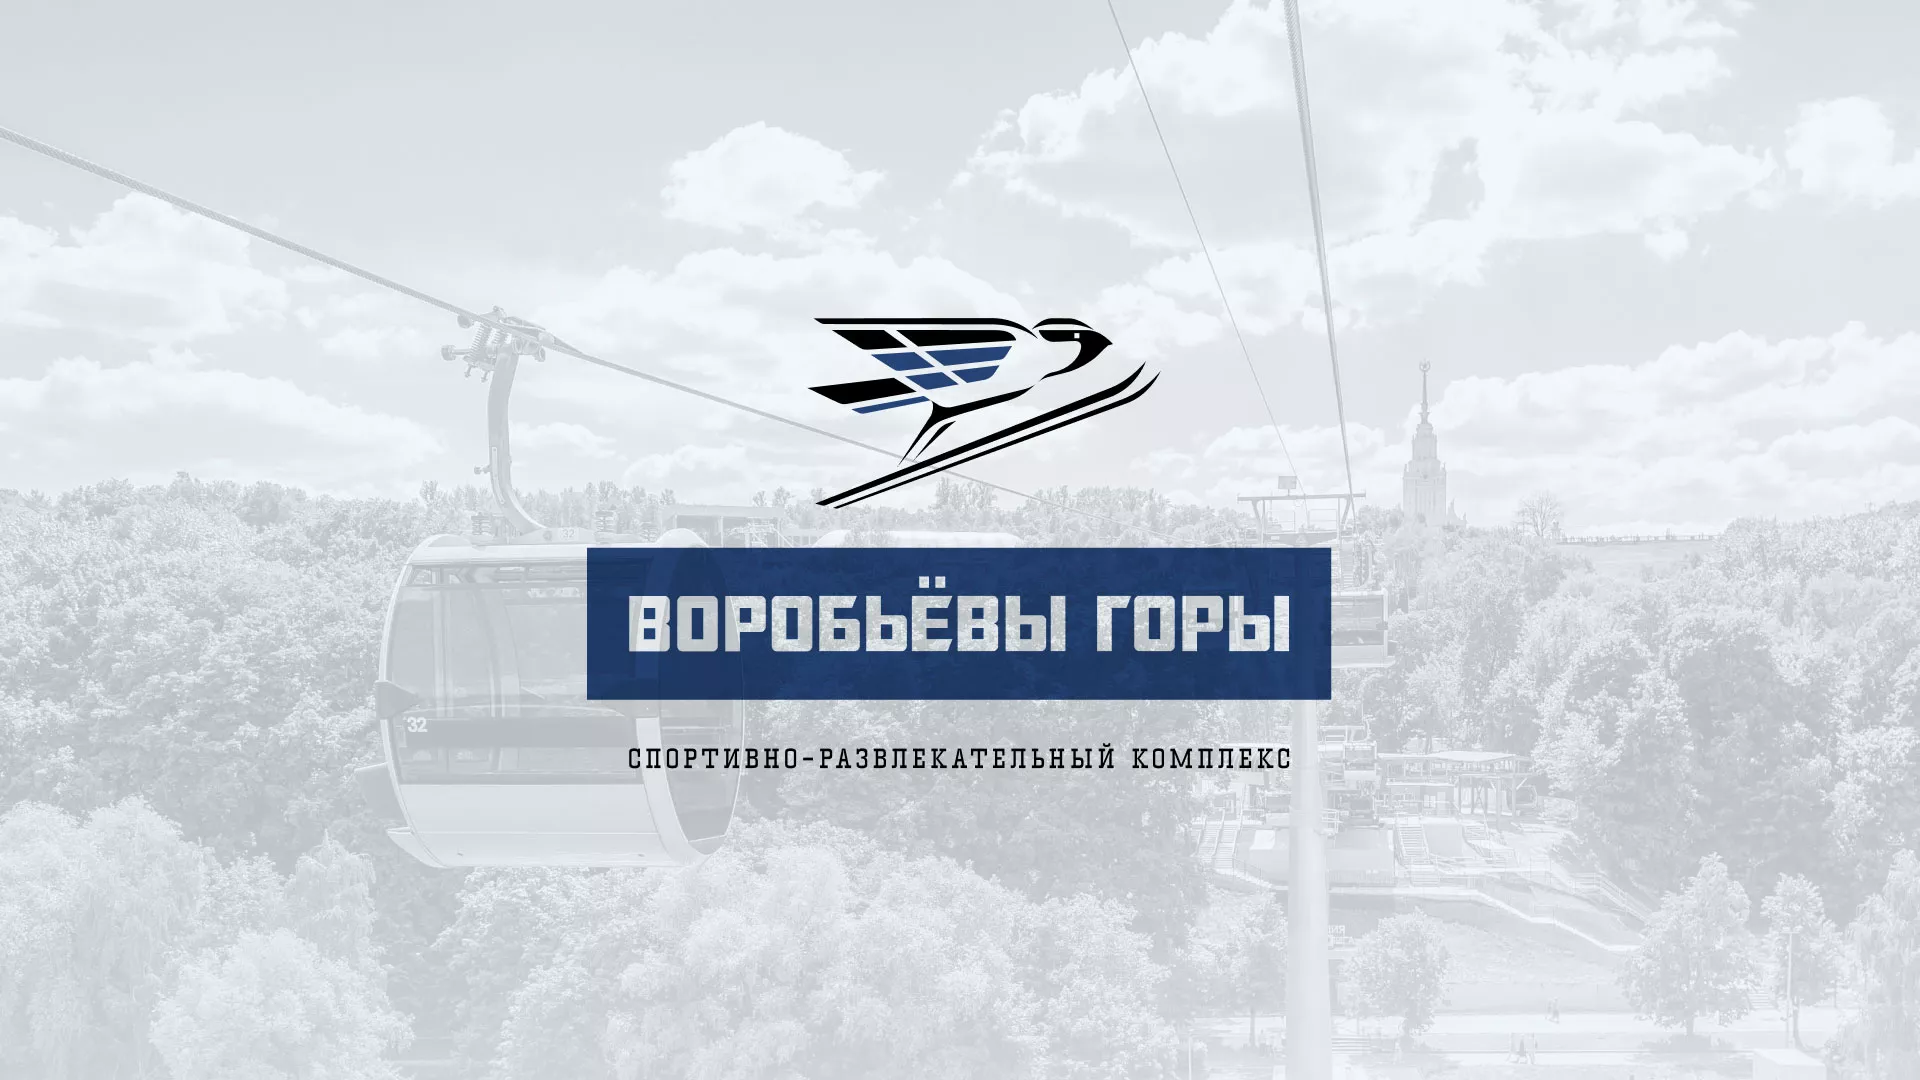 Разработка сайта в Змеиногорске для спортивно-развлекательного комплекса «Воробьёвы горы»